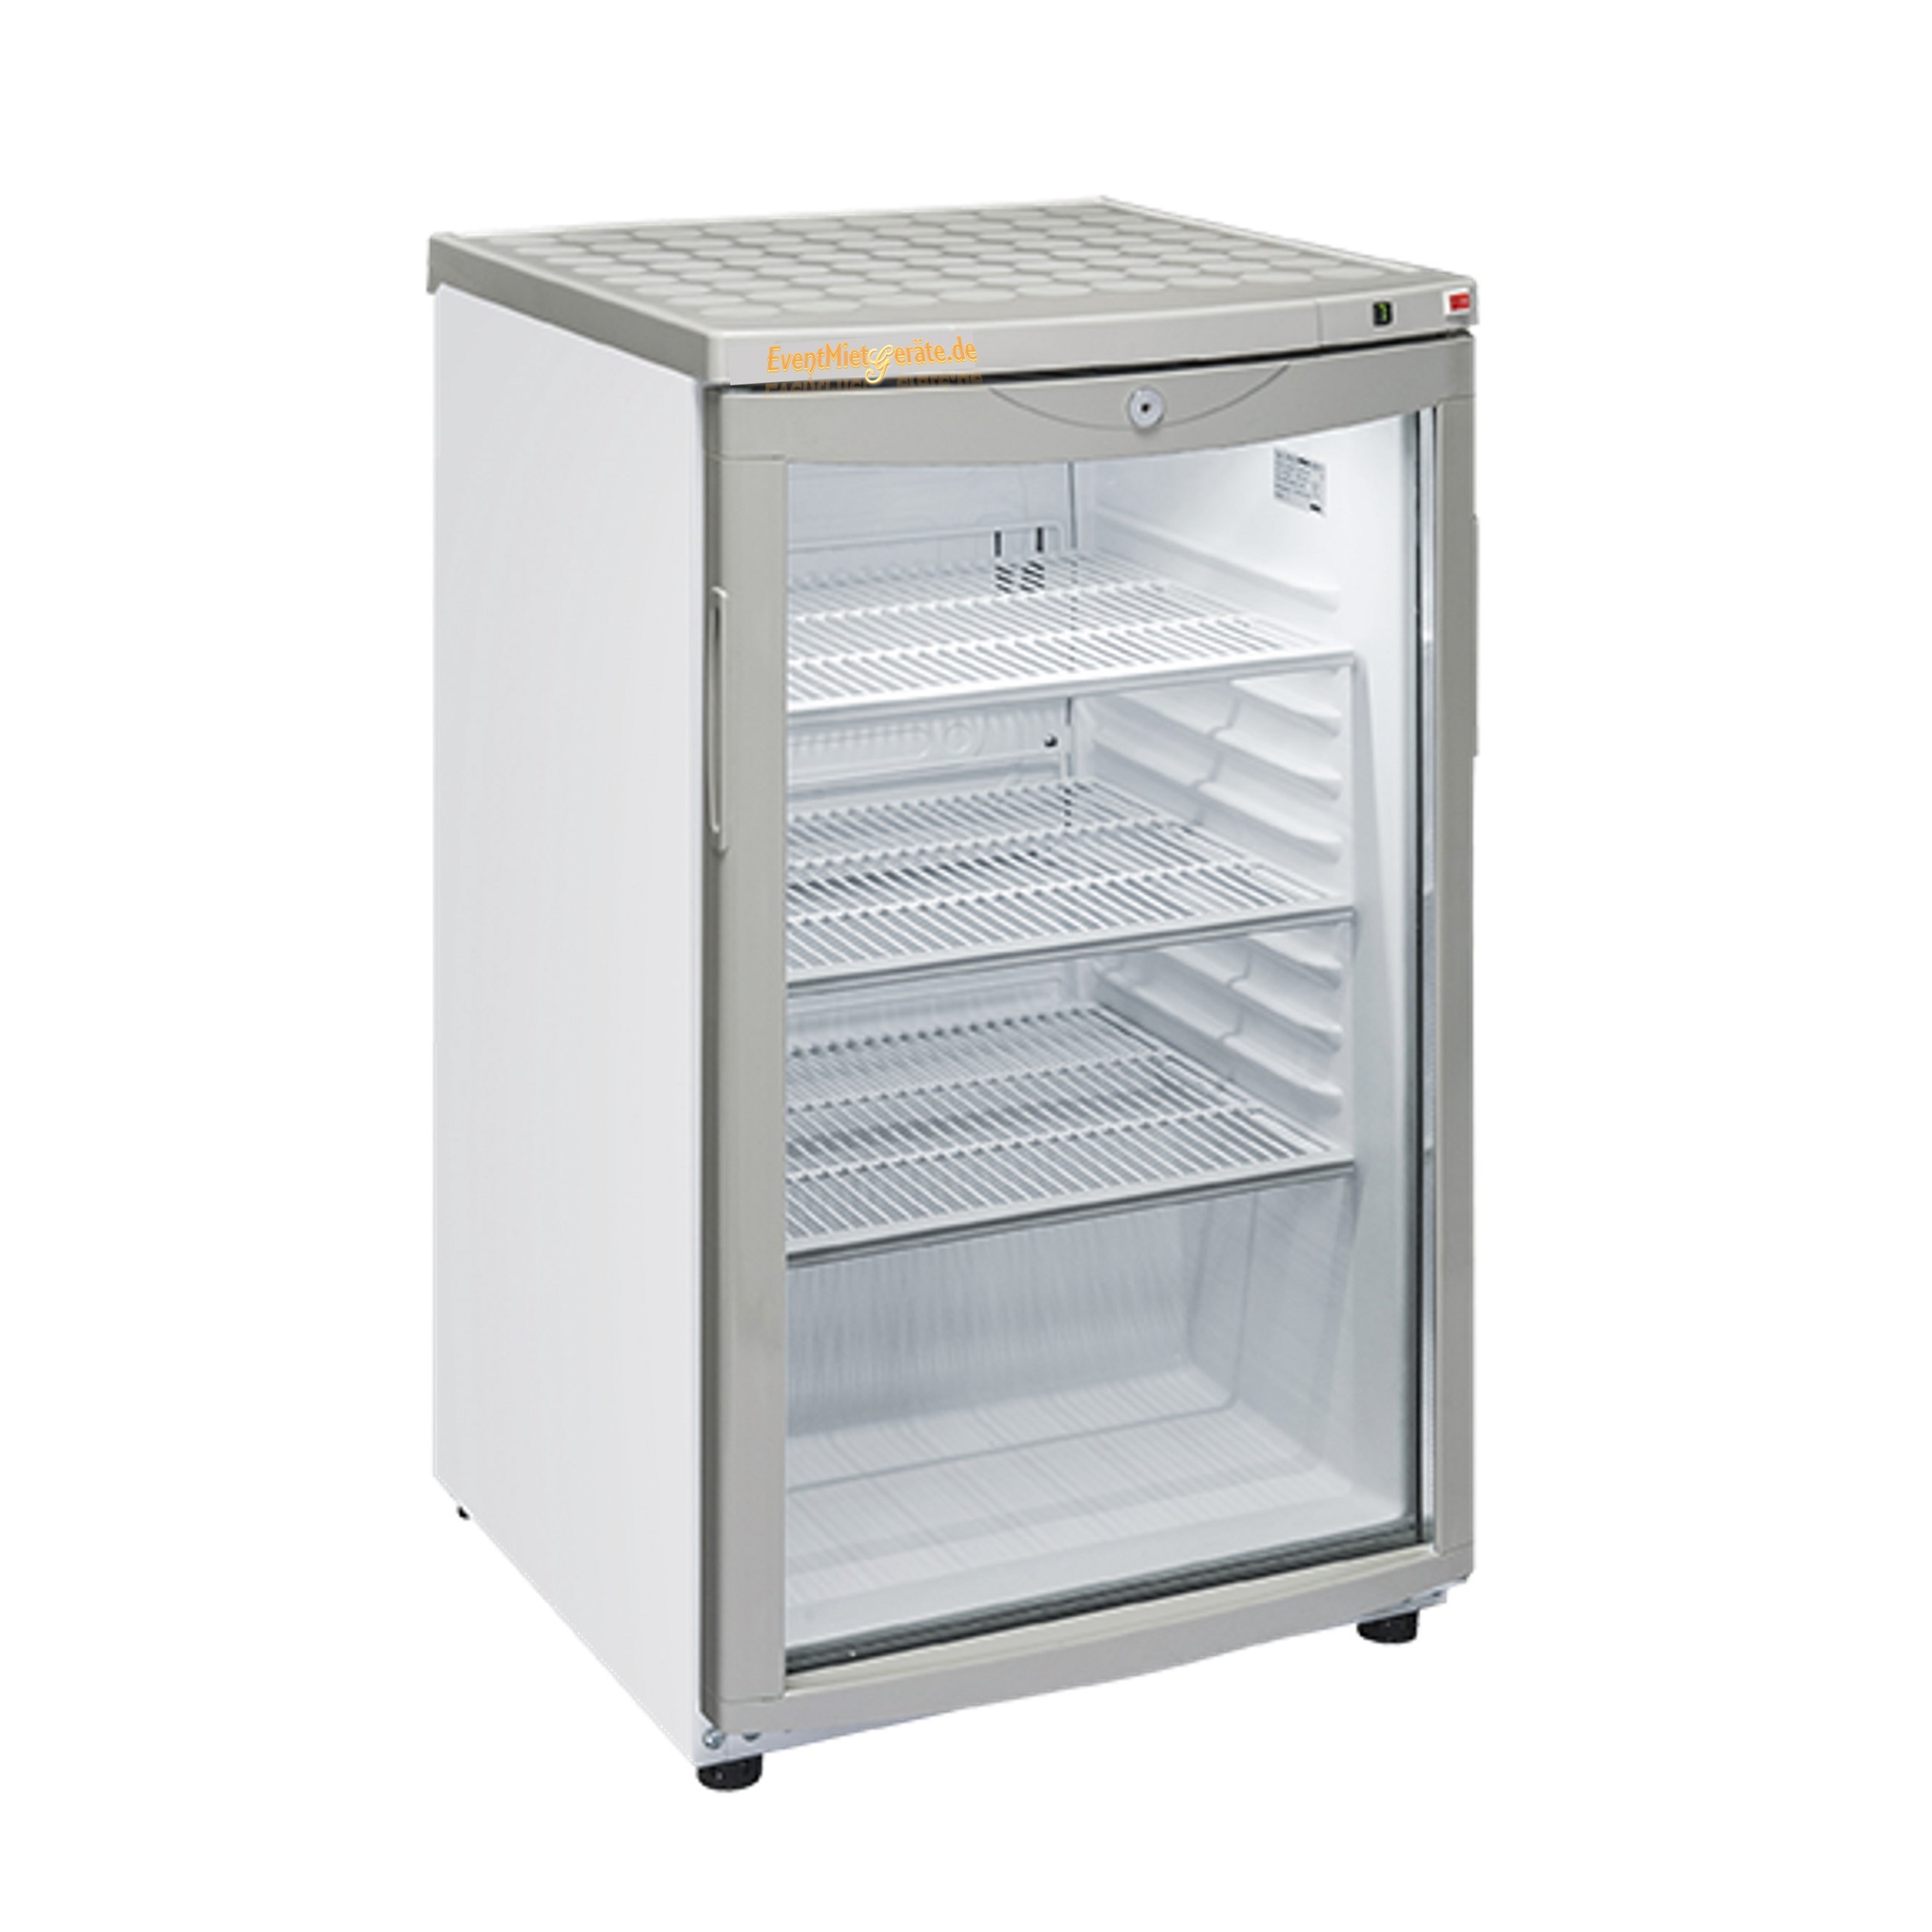 C1 Getränkekühlschrank, Kühlschrank mit Glastür für Getränke